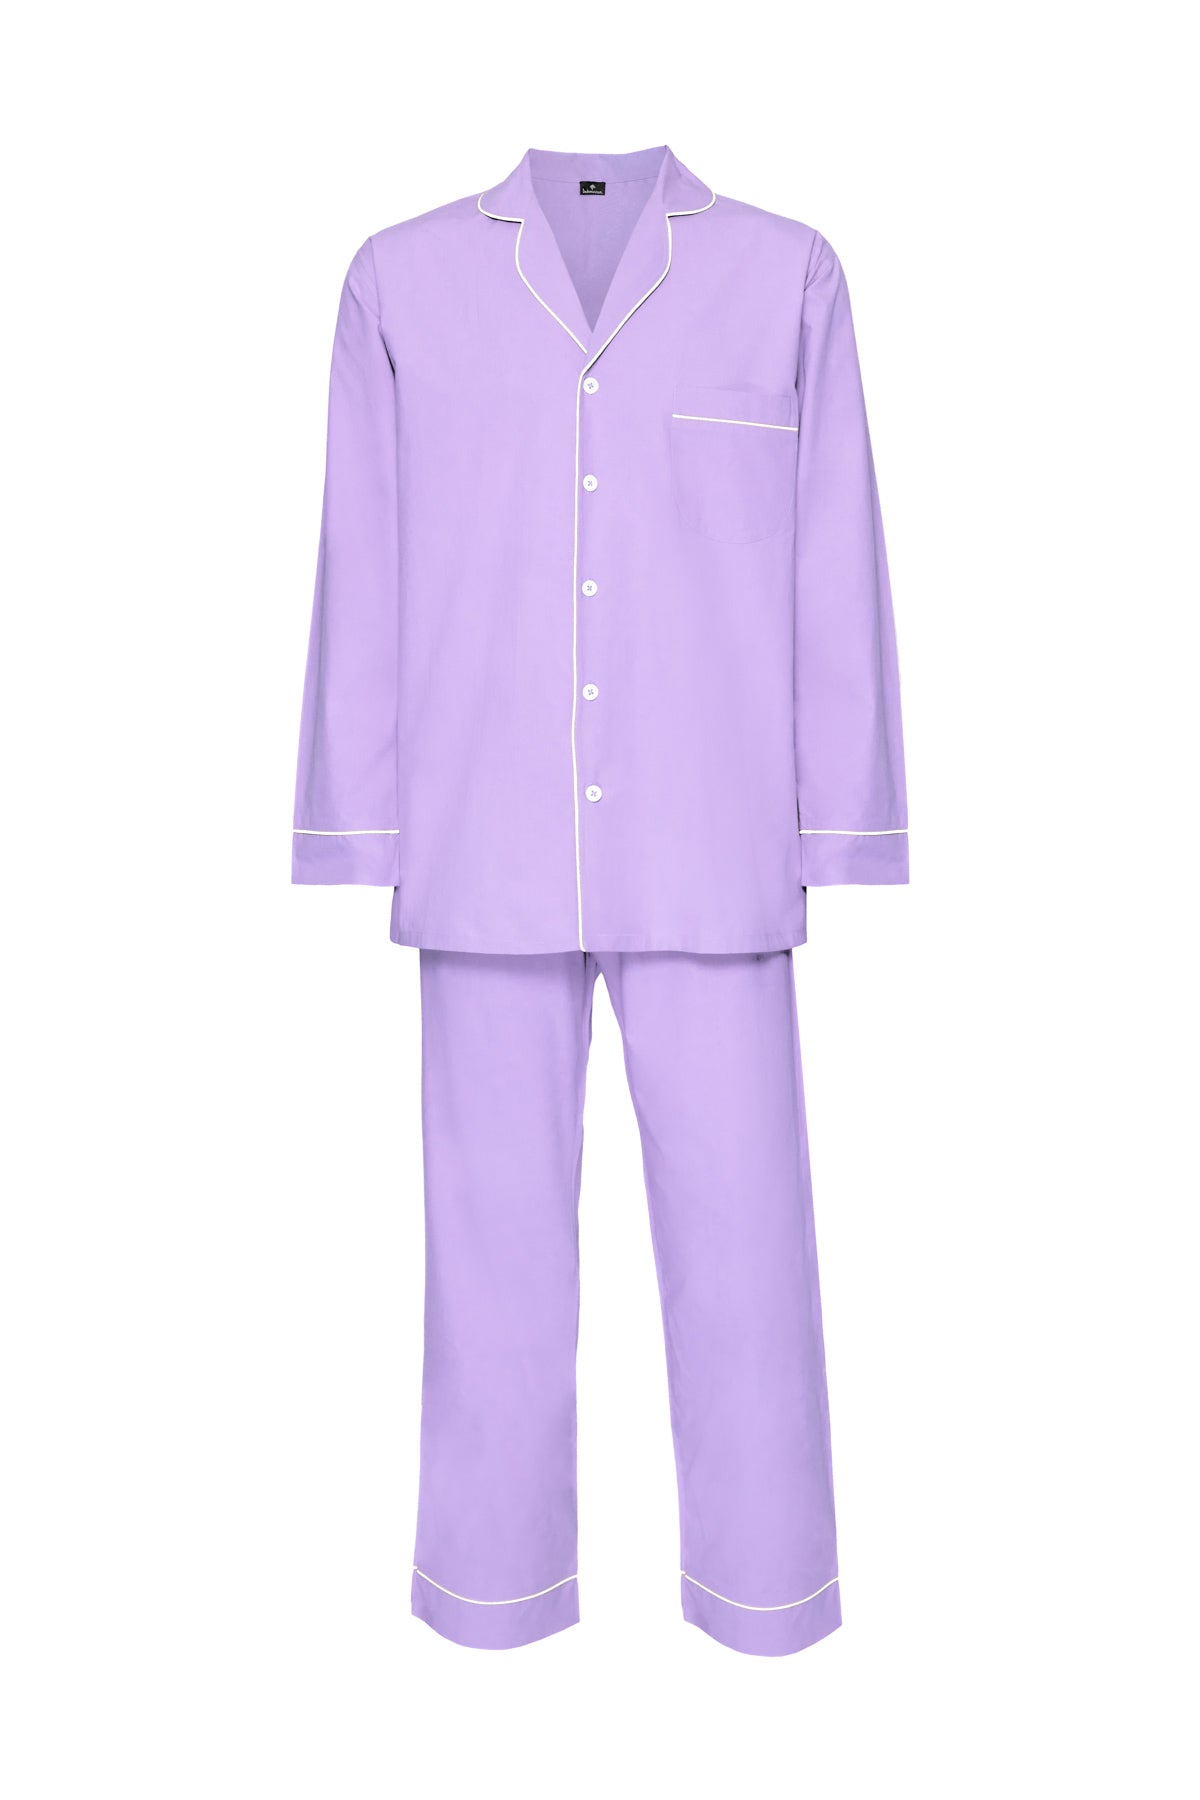 Men's Cotton Pyjamas - Purple & White Piping